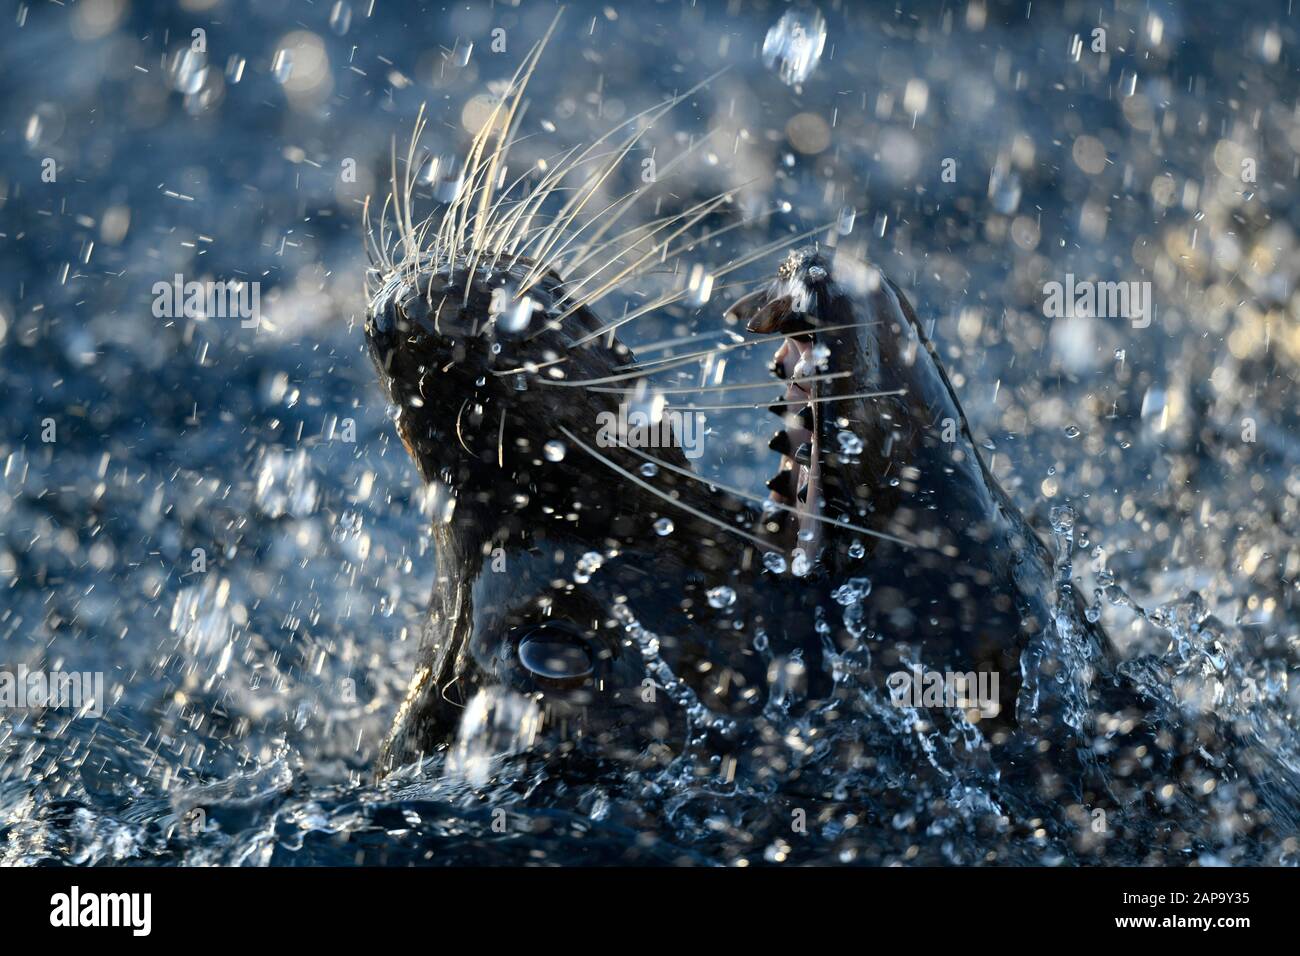 Kalifornischer Seelöwe (Zalophus californianus), männlich, spritzend in Wasser, Tierporträt, Nahaufnahme, gefangen, Deutschland Stockfoto